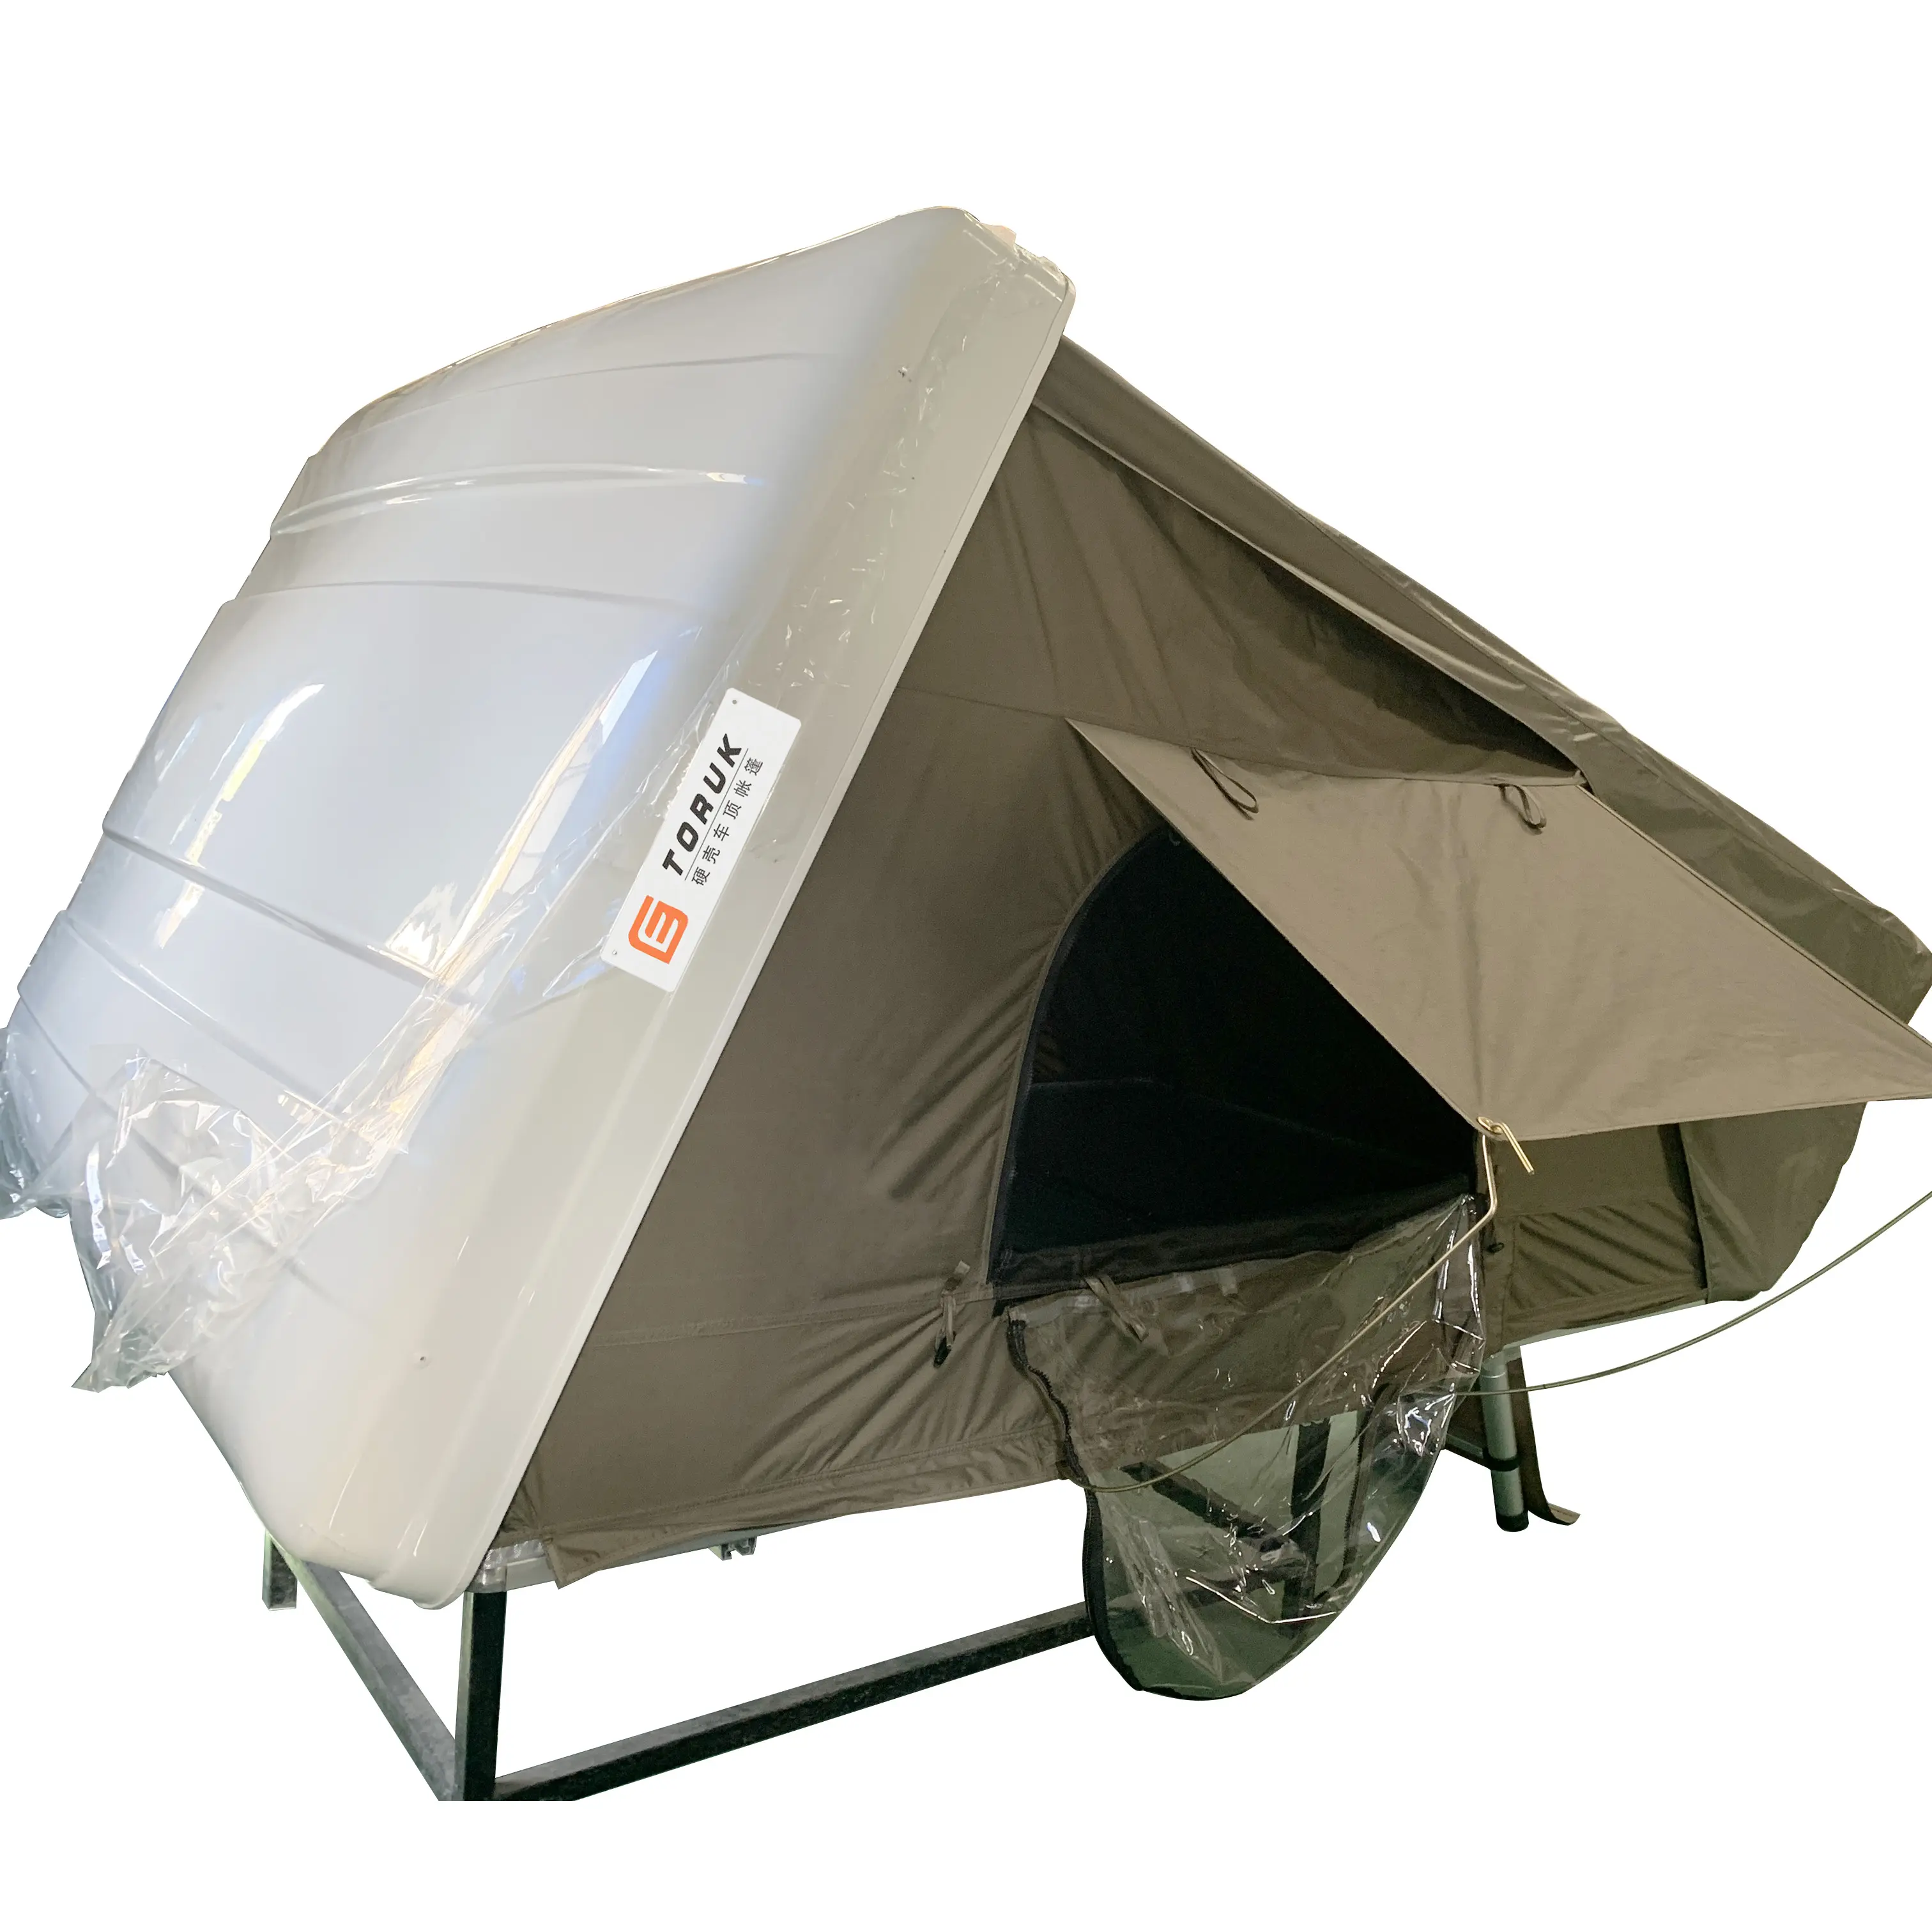 Tenda Penampungan 4 Orang 4wd, Tenda Atap Mobil Cangkang Keras Kecil Lipat Garasi Ultra Ringan 4 Orang untuk Berkemah